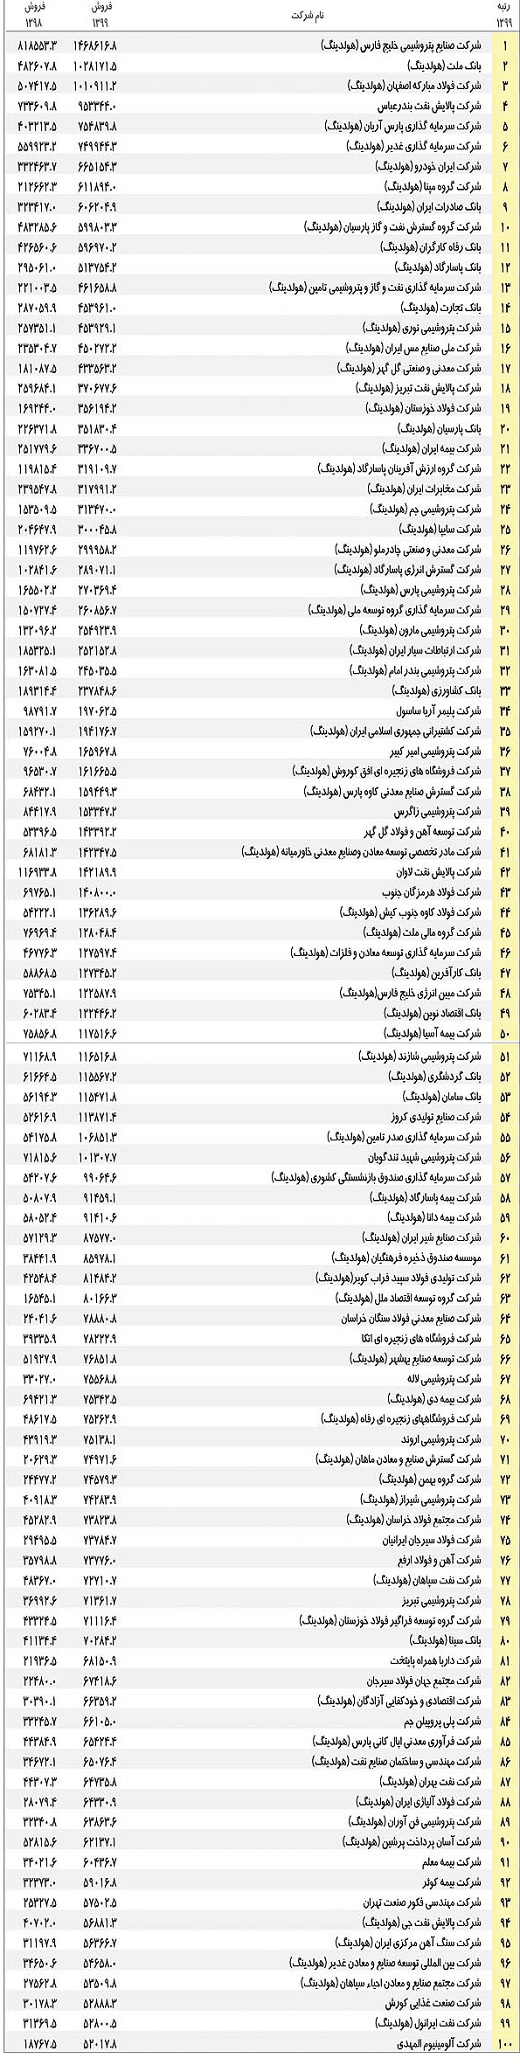 لیست 500 شرکت برتر ایران پردرآمدترین شرکت های ایران بهترین شرکتهای ایران بزرگترین شرکتهای ایران بزرگ ترین شرکت بورسی برترین شرکتهای بورس برترین شرکتهای ایران برترین شرکت های خصوصی ایران 100 شرکت برتر